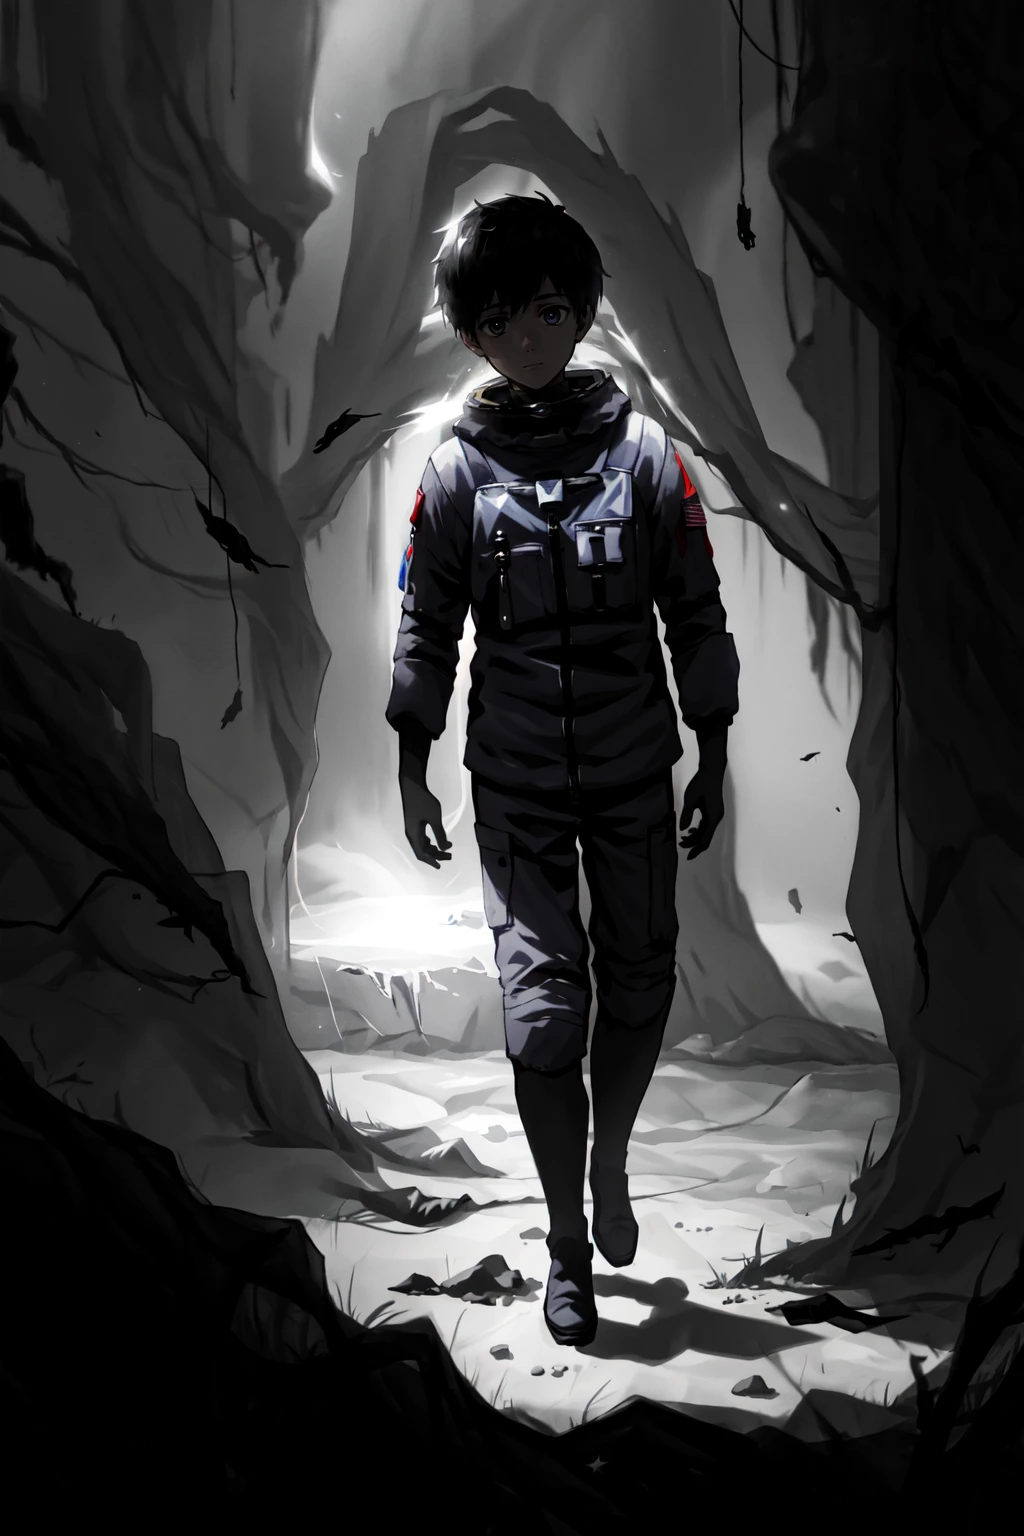 リムコスタイル, 1人の男の子, 男性フォーカス, 月面の宇宙飛行士, うつ病の特徴, 限界恐怖空間, 極端な光と影